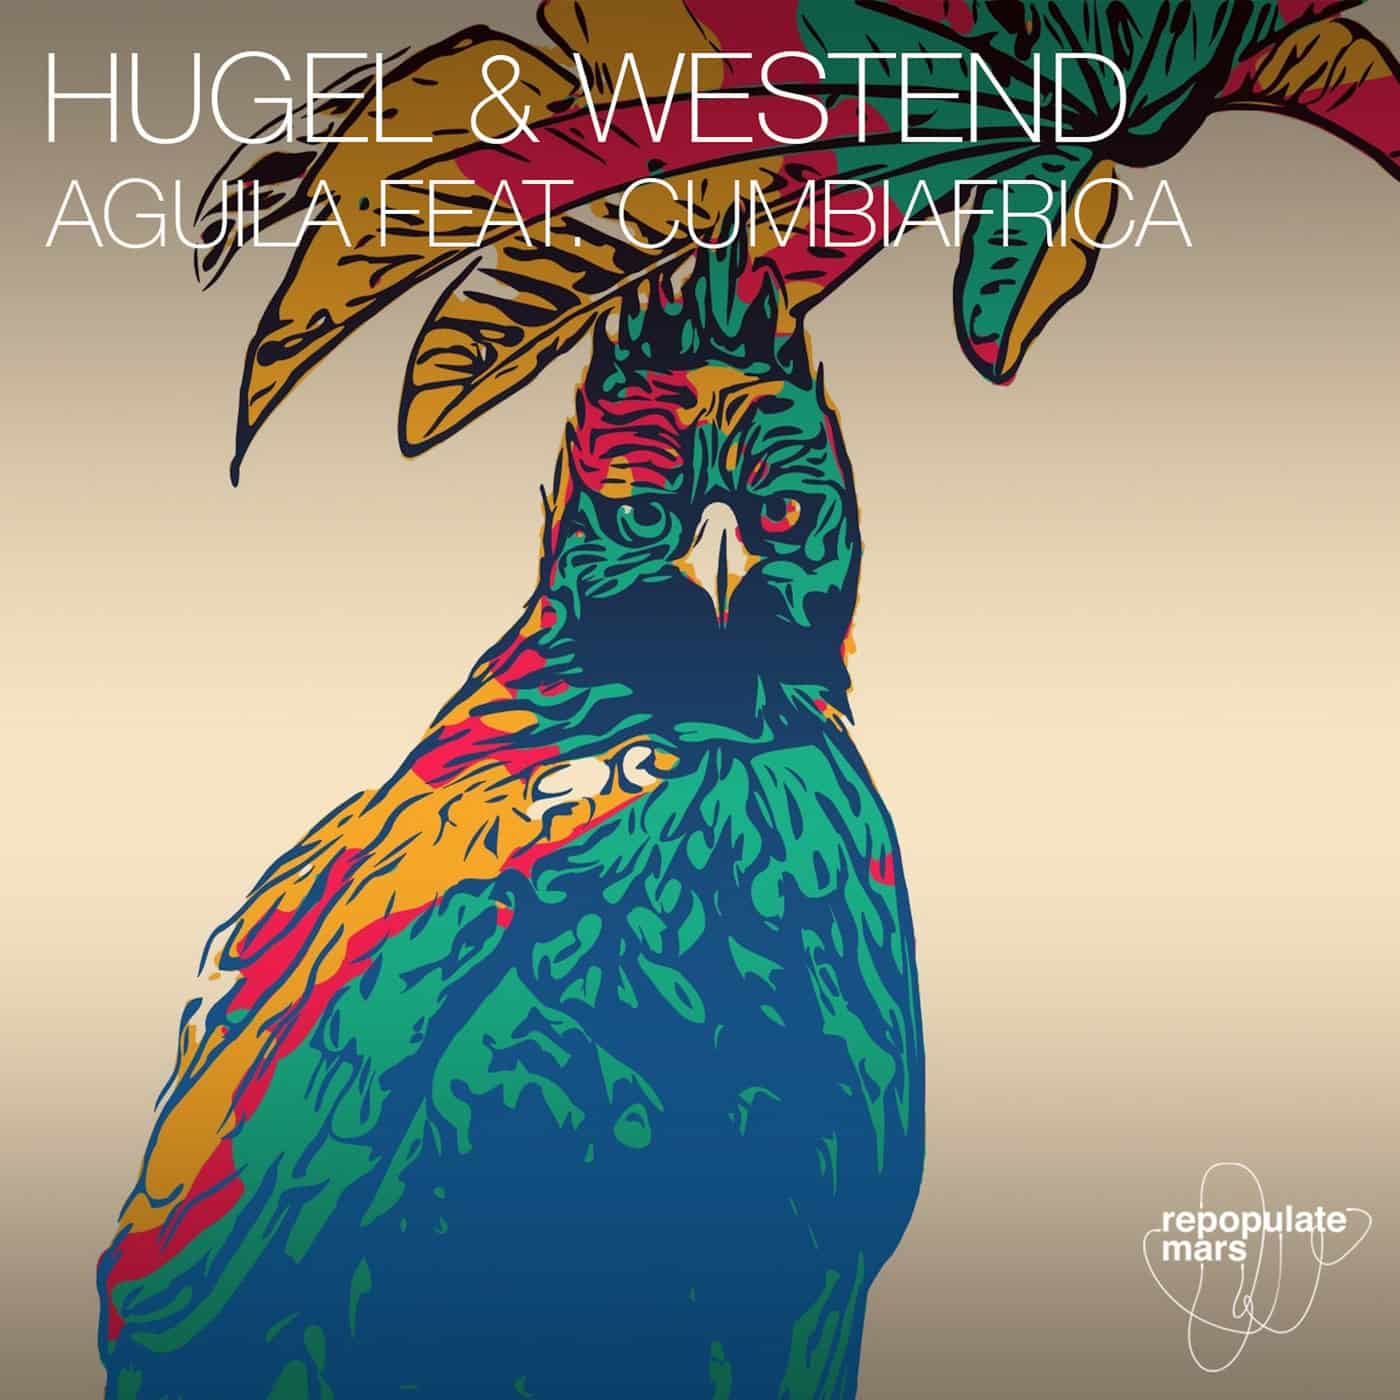 image cover: Hugel, Westend, Cumbiafrica - Aguila ft. Cumbiafrica / RPM138